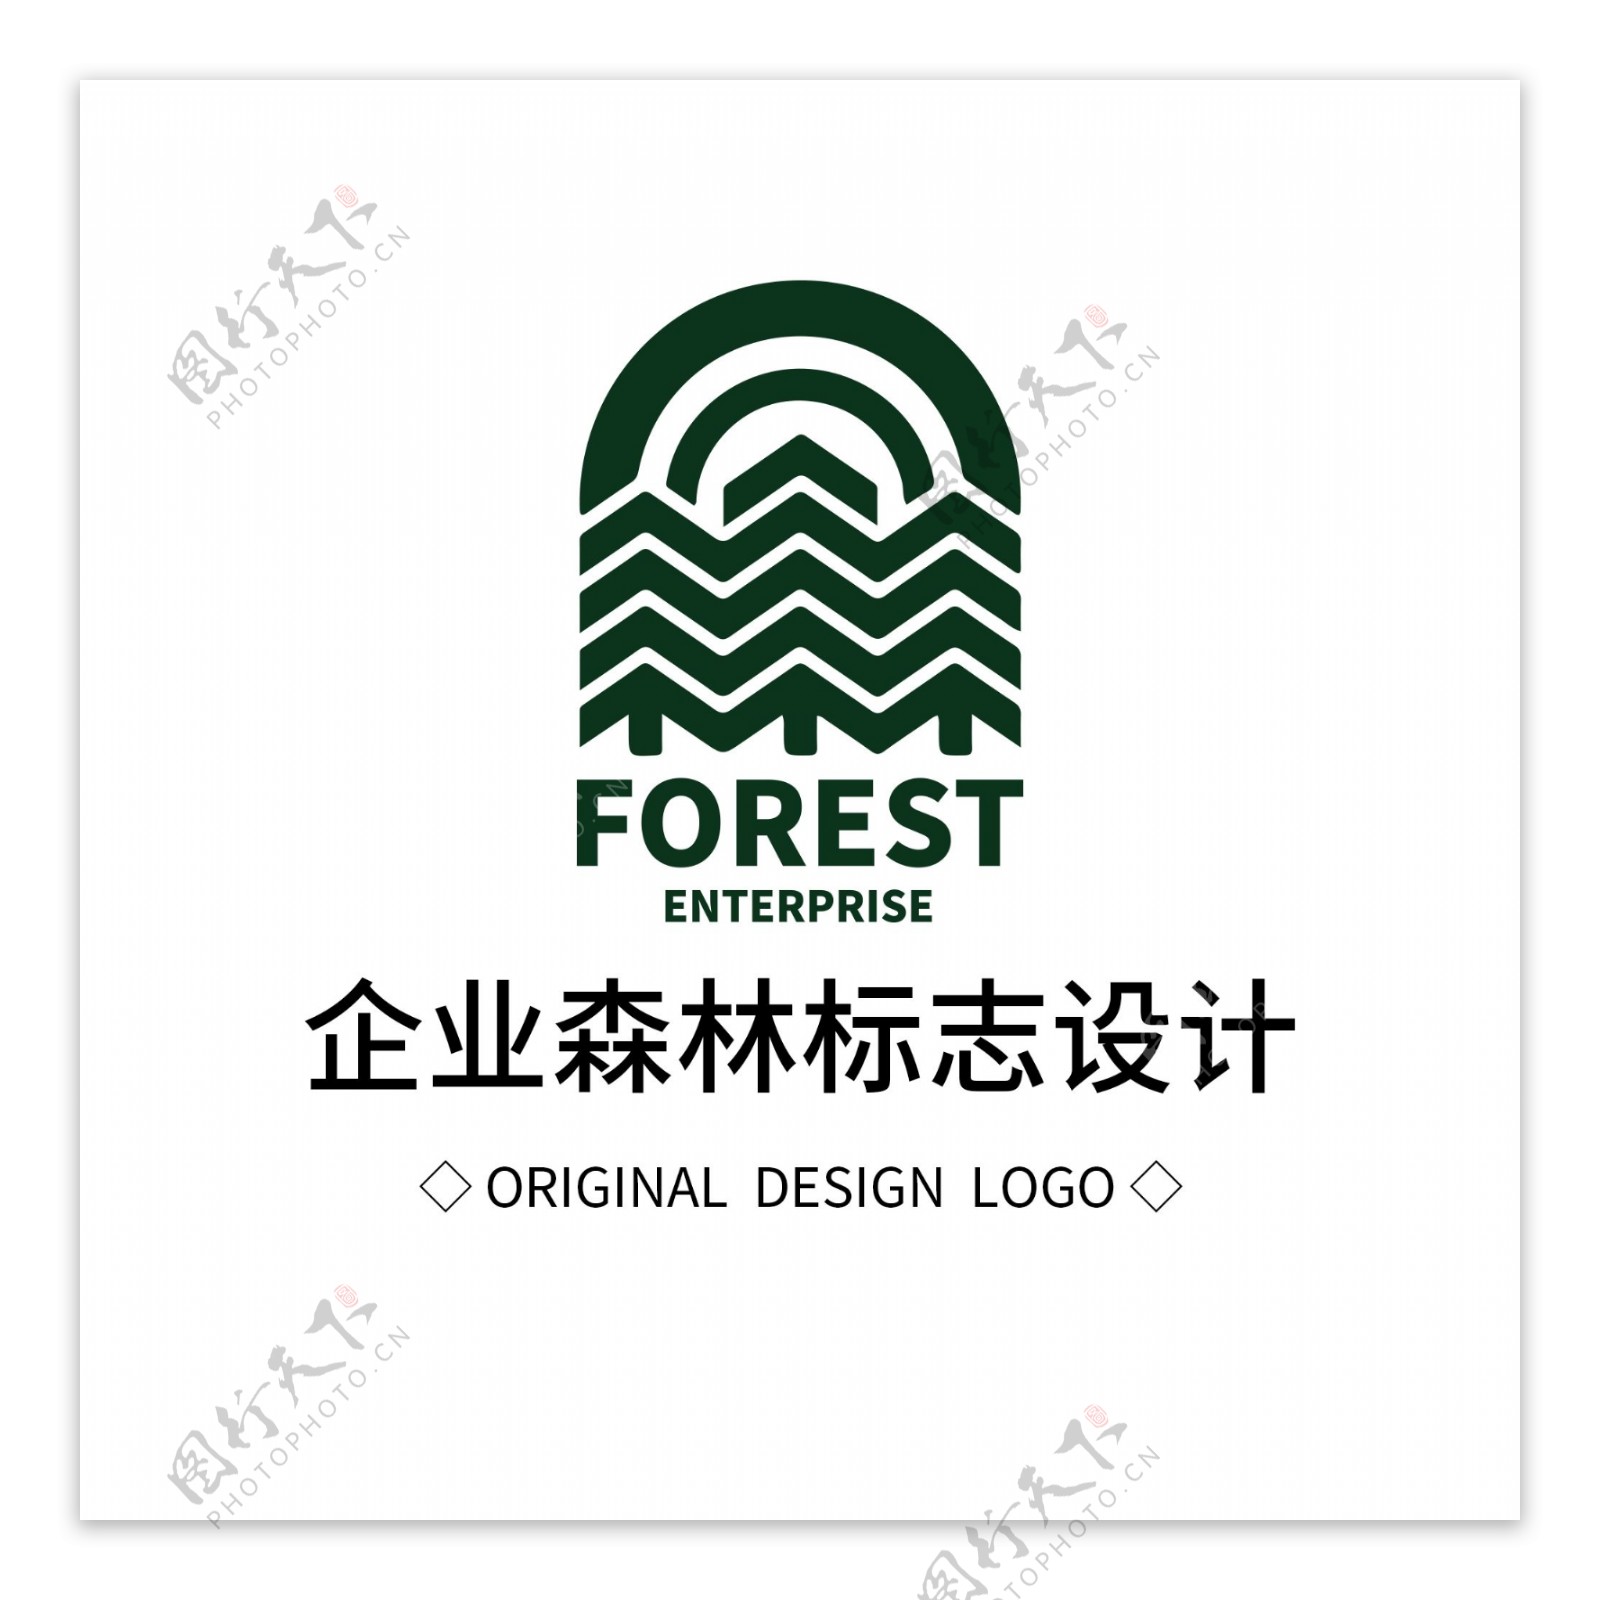 原创企业森林标志设计